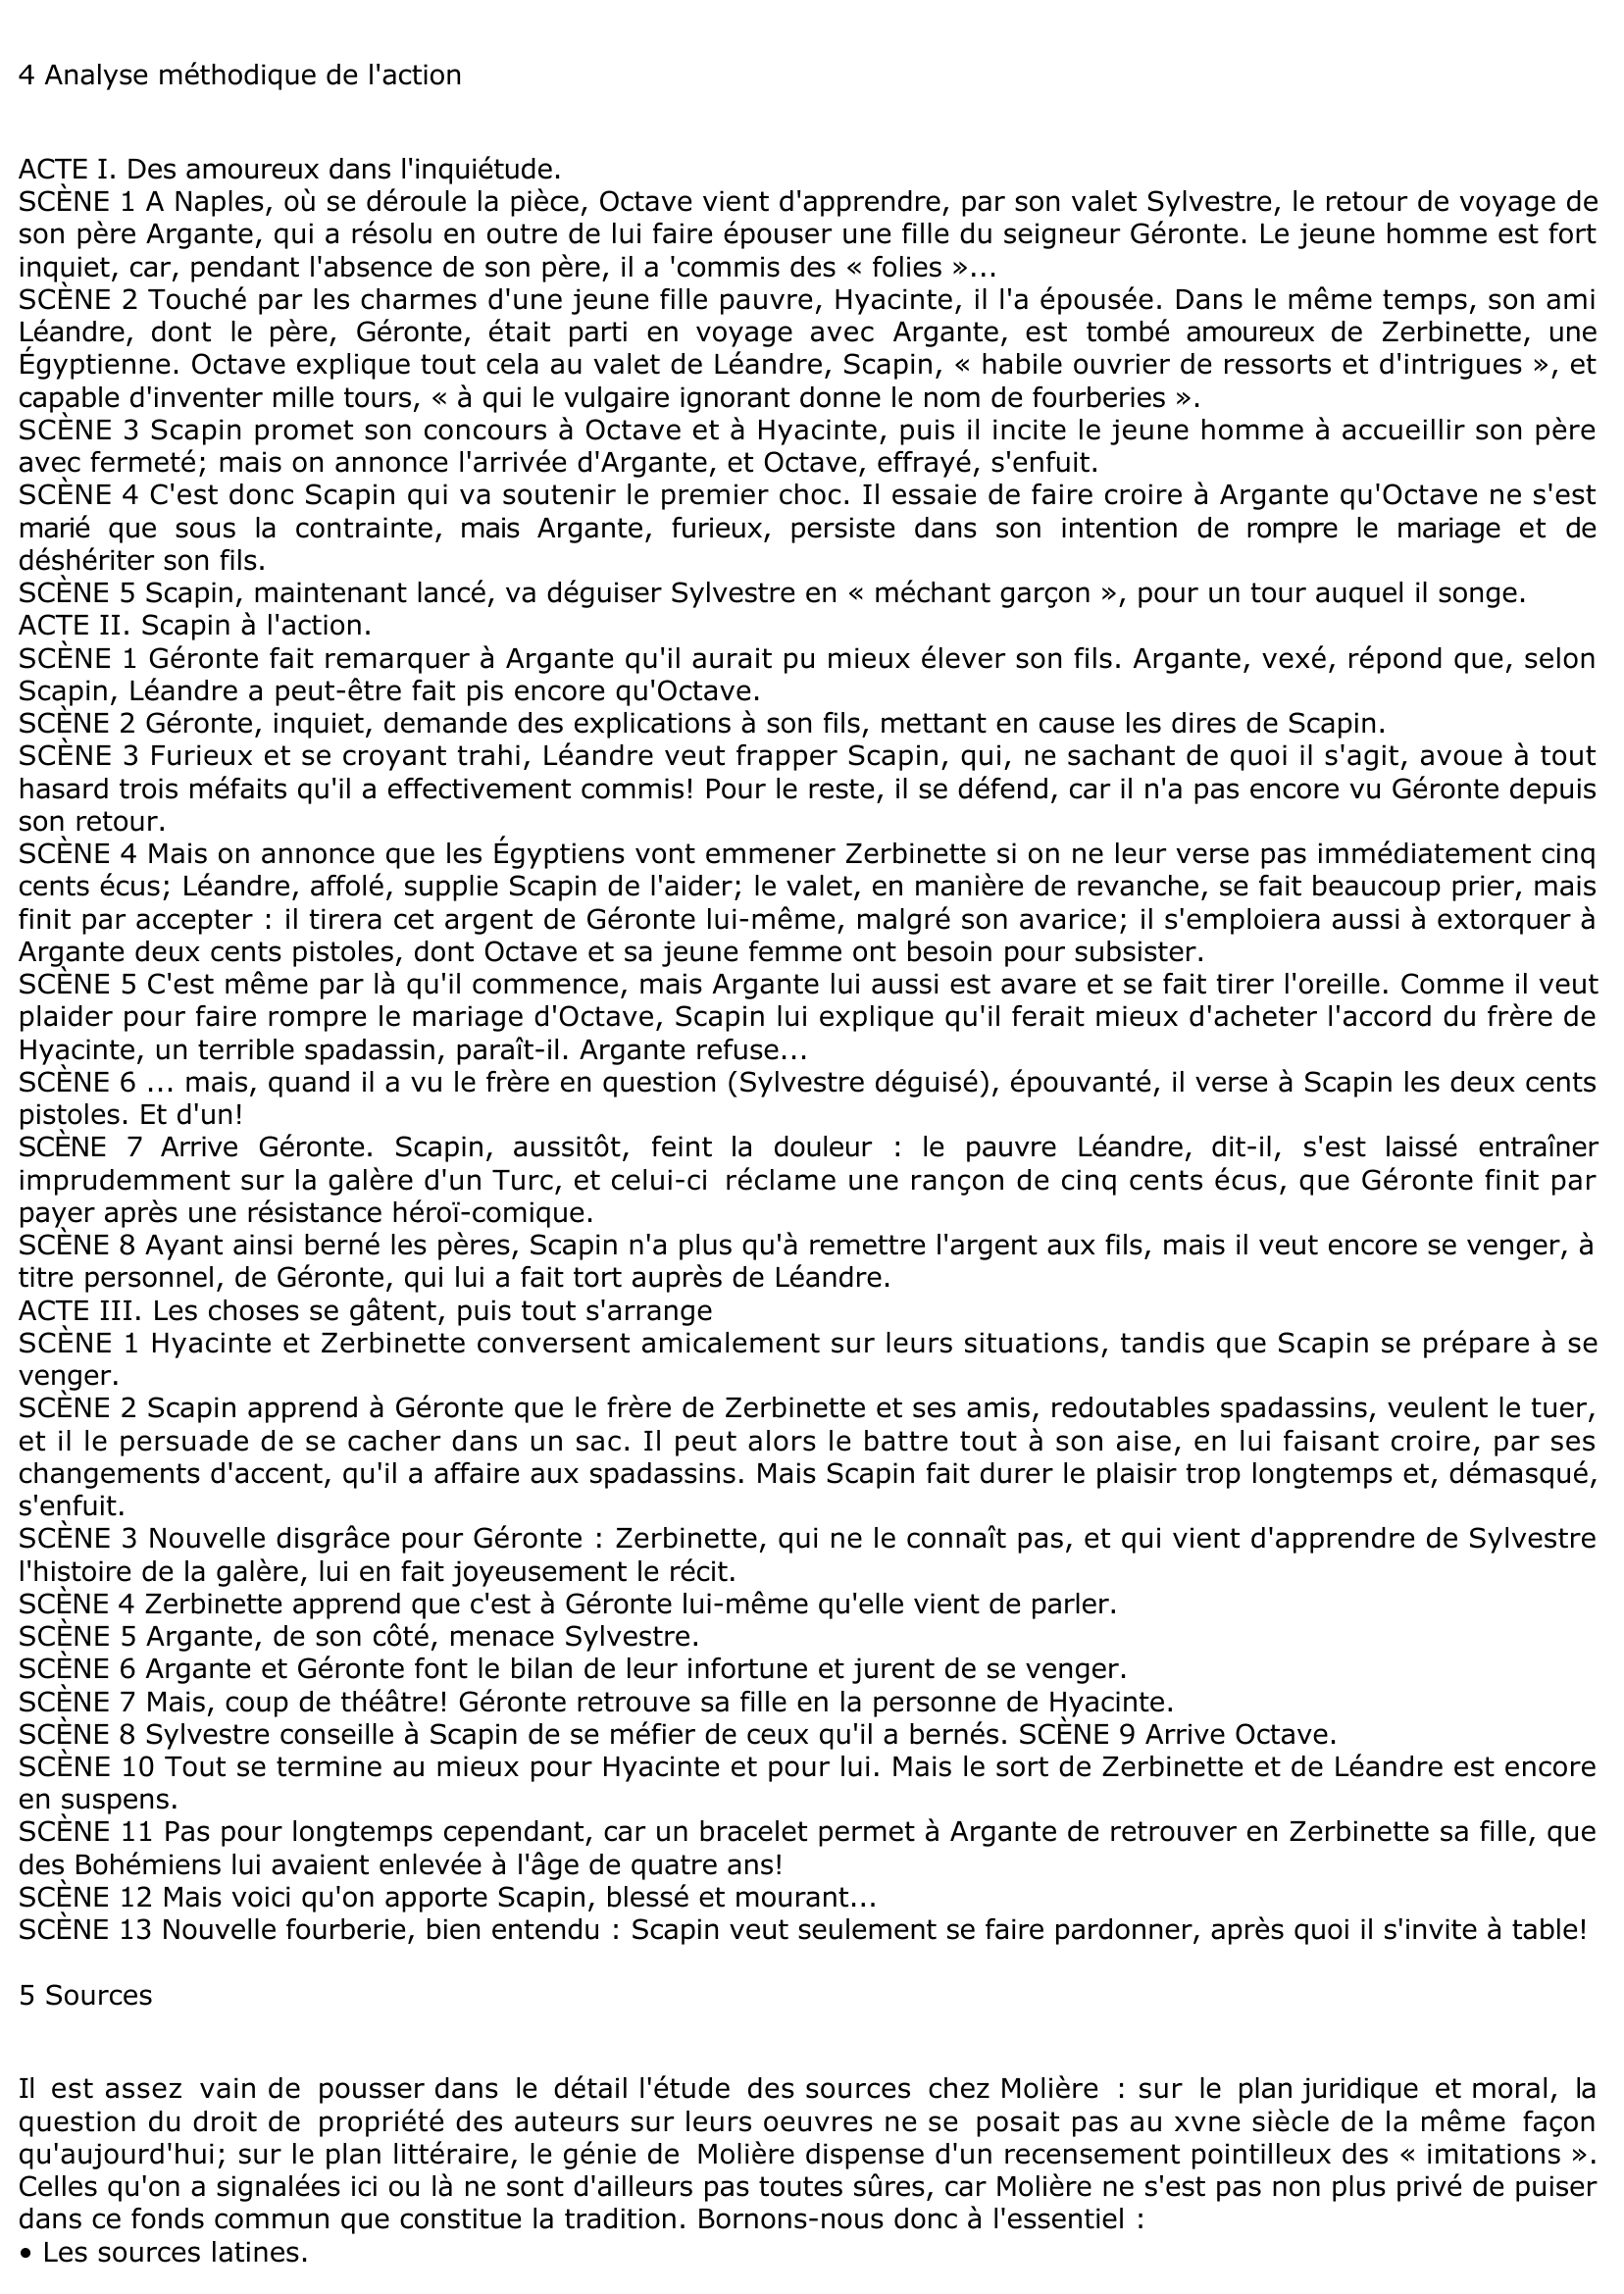 Prévisualisation du document Notice sur Les Fourberies de Scapin de Molière: résumé, analyse, personnages....